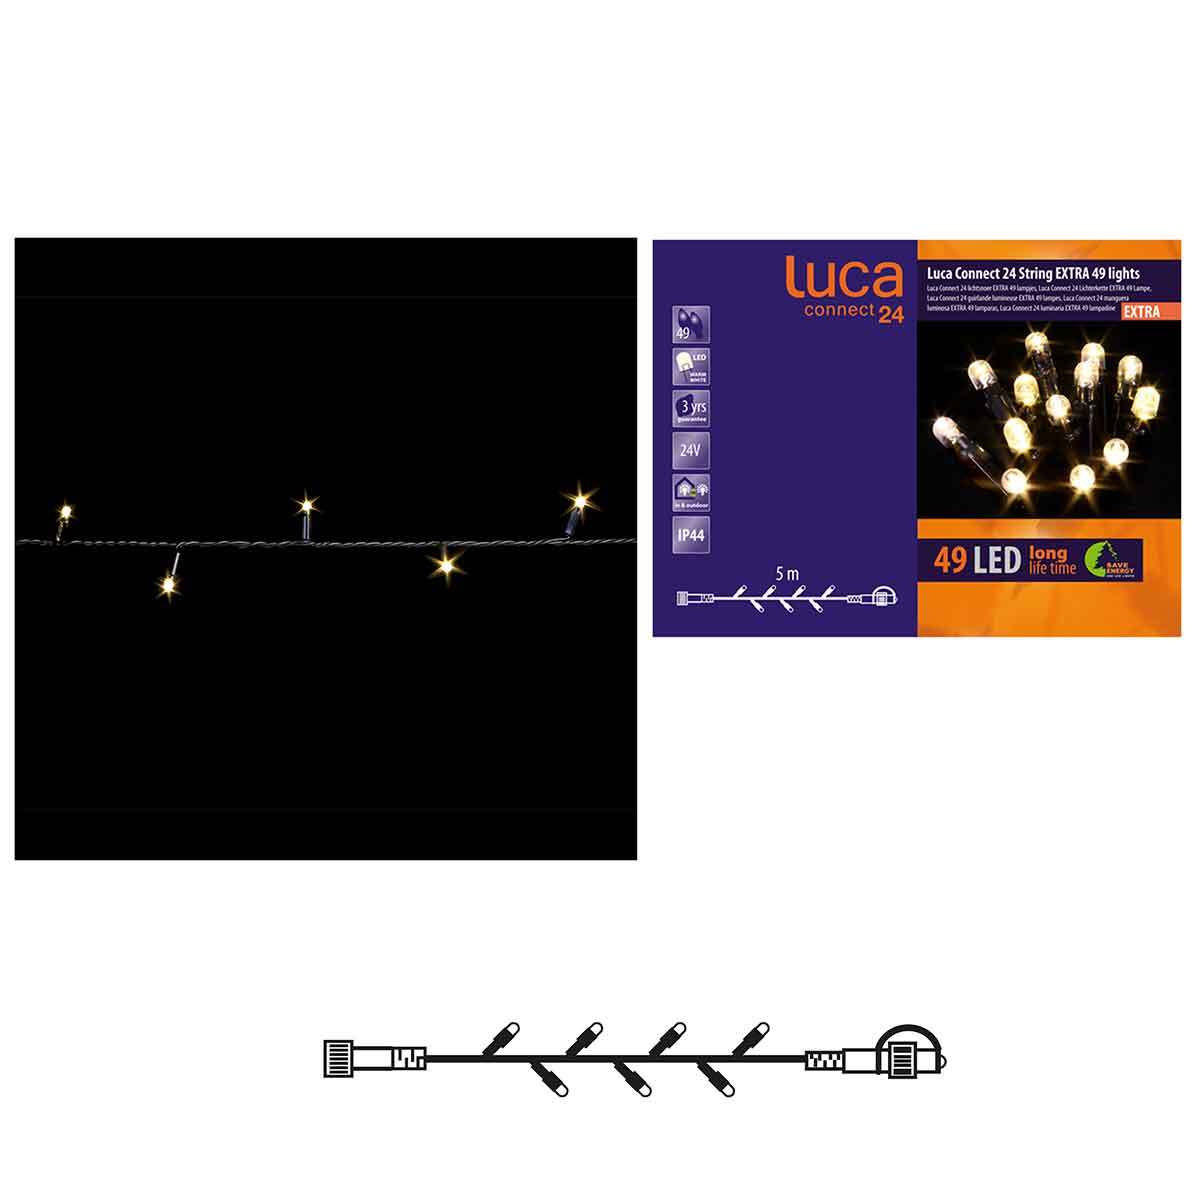 Luca lighting - Snoer L500cm - Connect 24V - Warm Wit LED 49 Lights